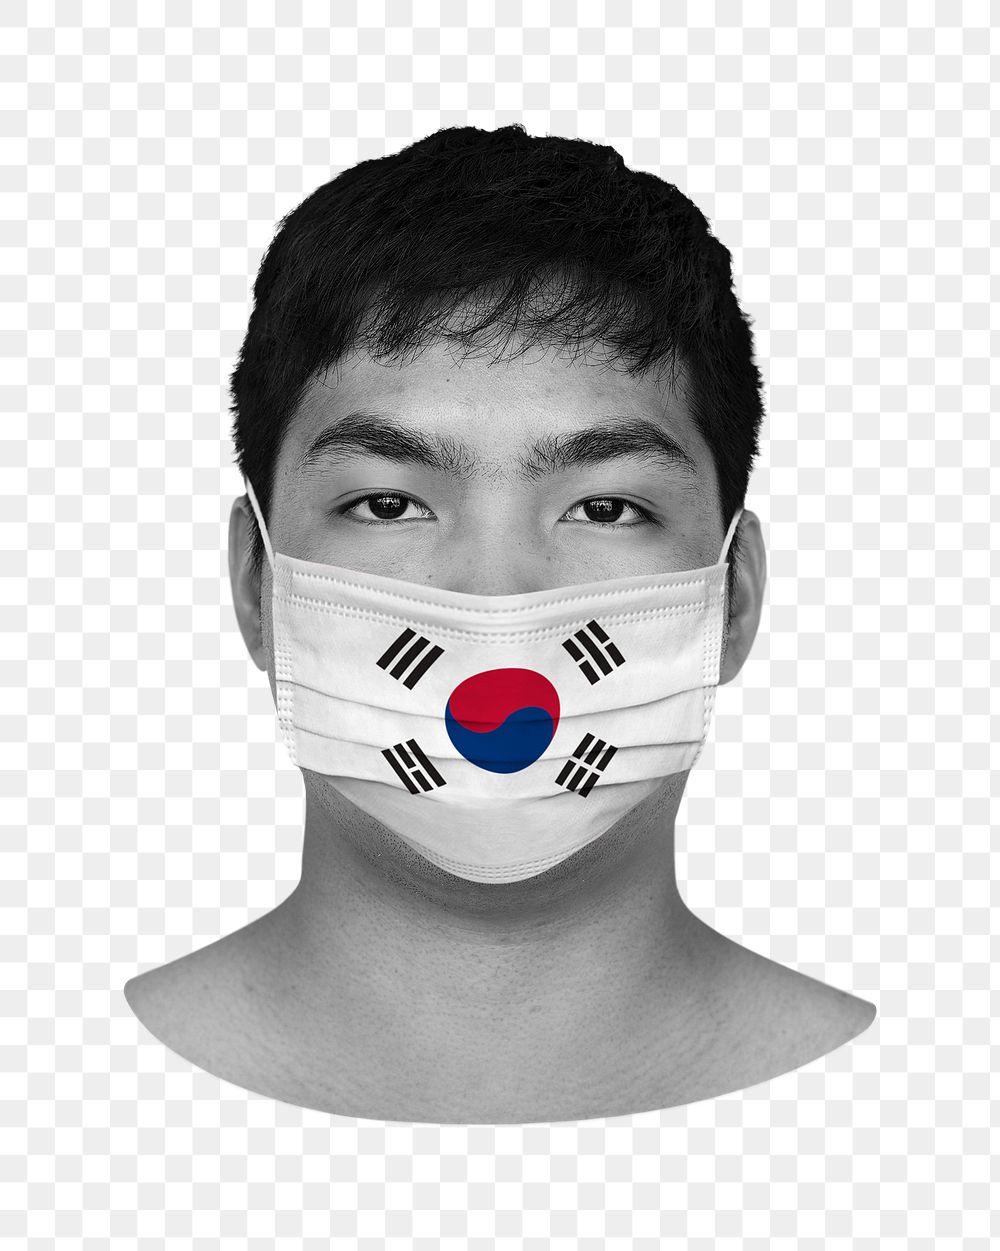 South Korean man wearing a face mask during coronavirus pandemic